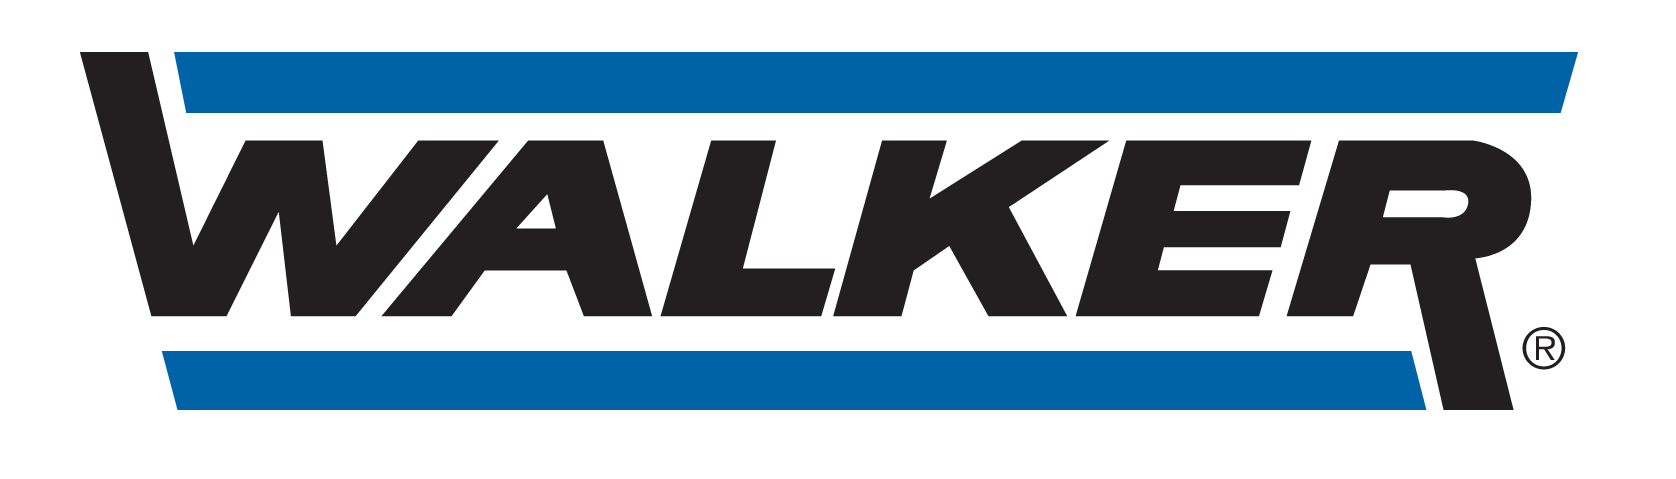 ALR AUTOMOBILES - logo Walker